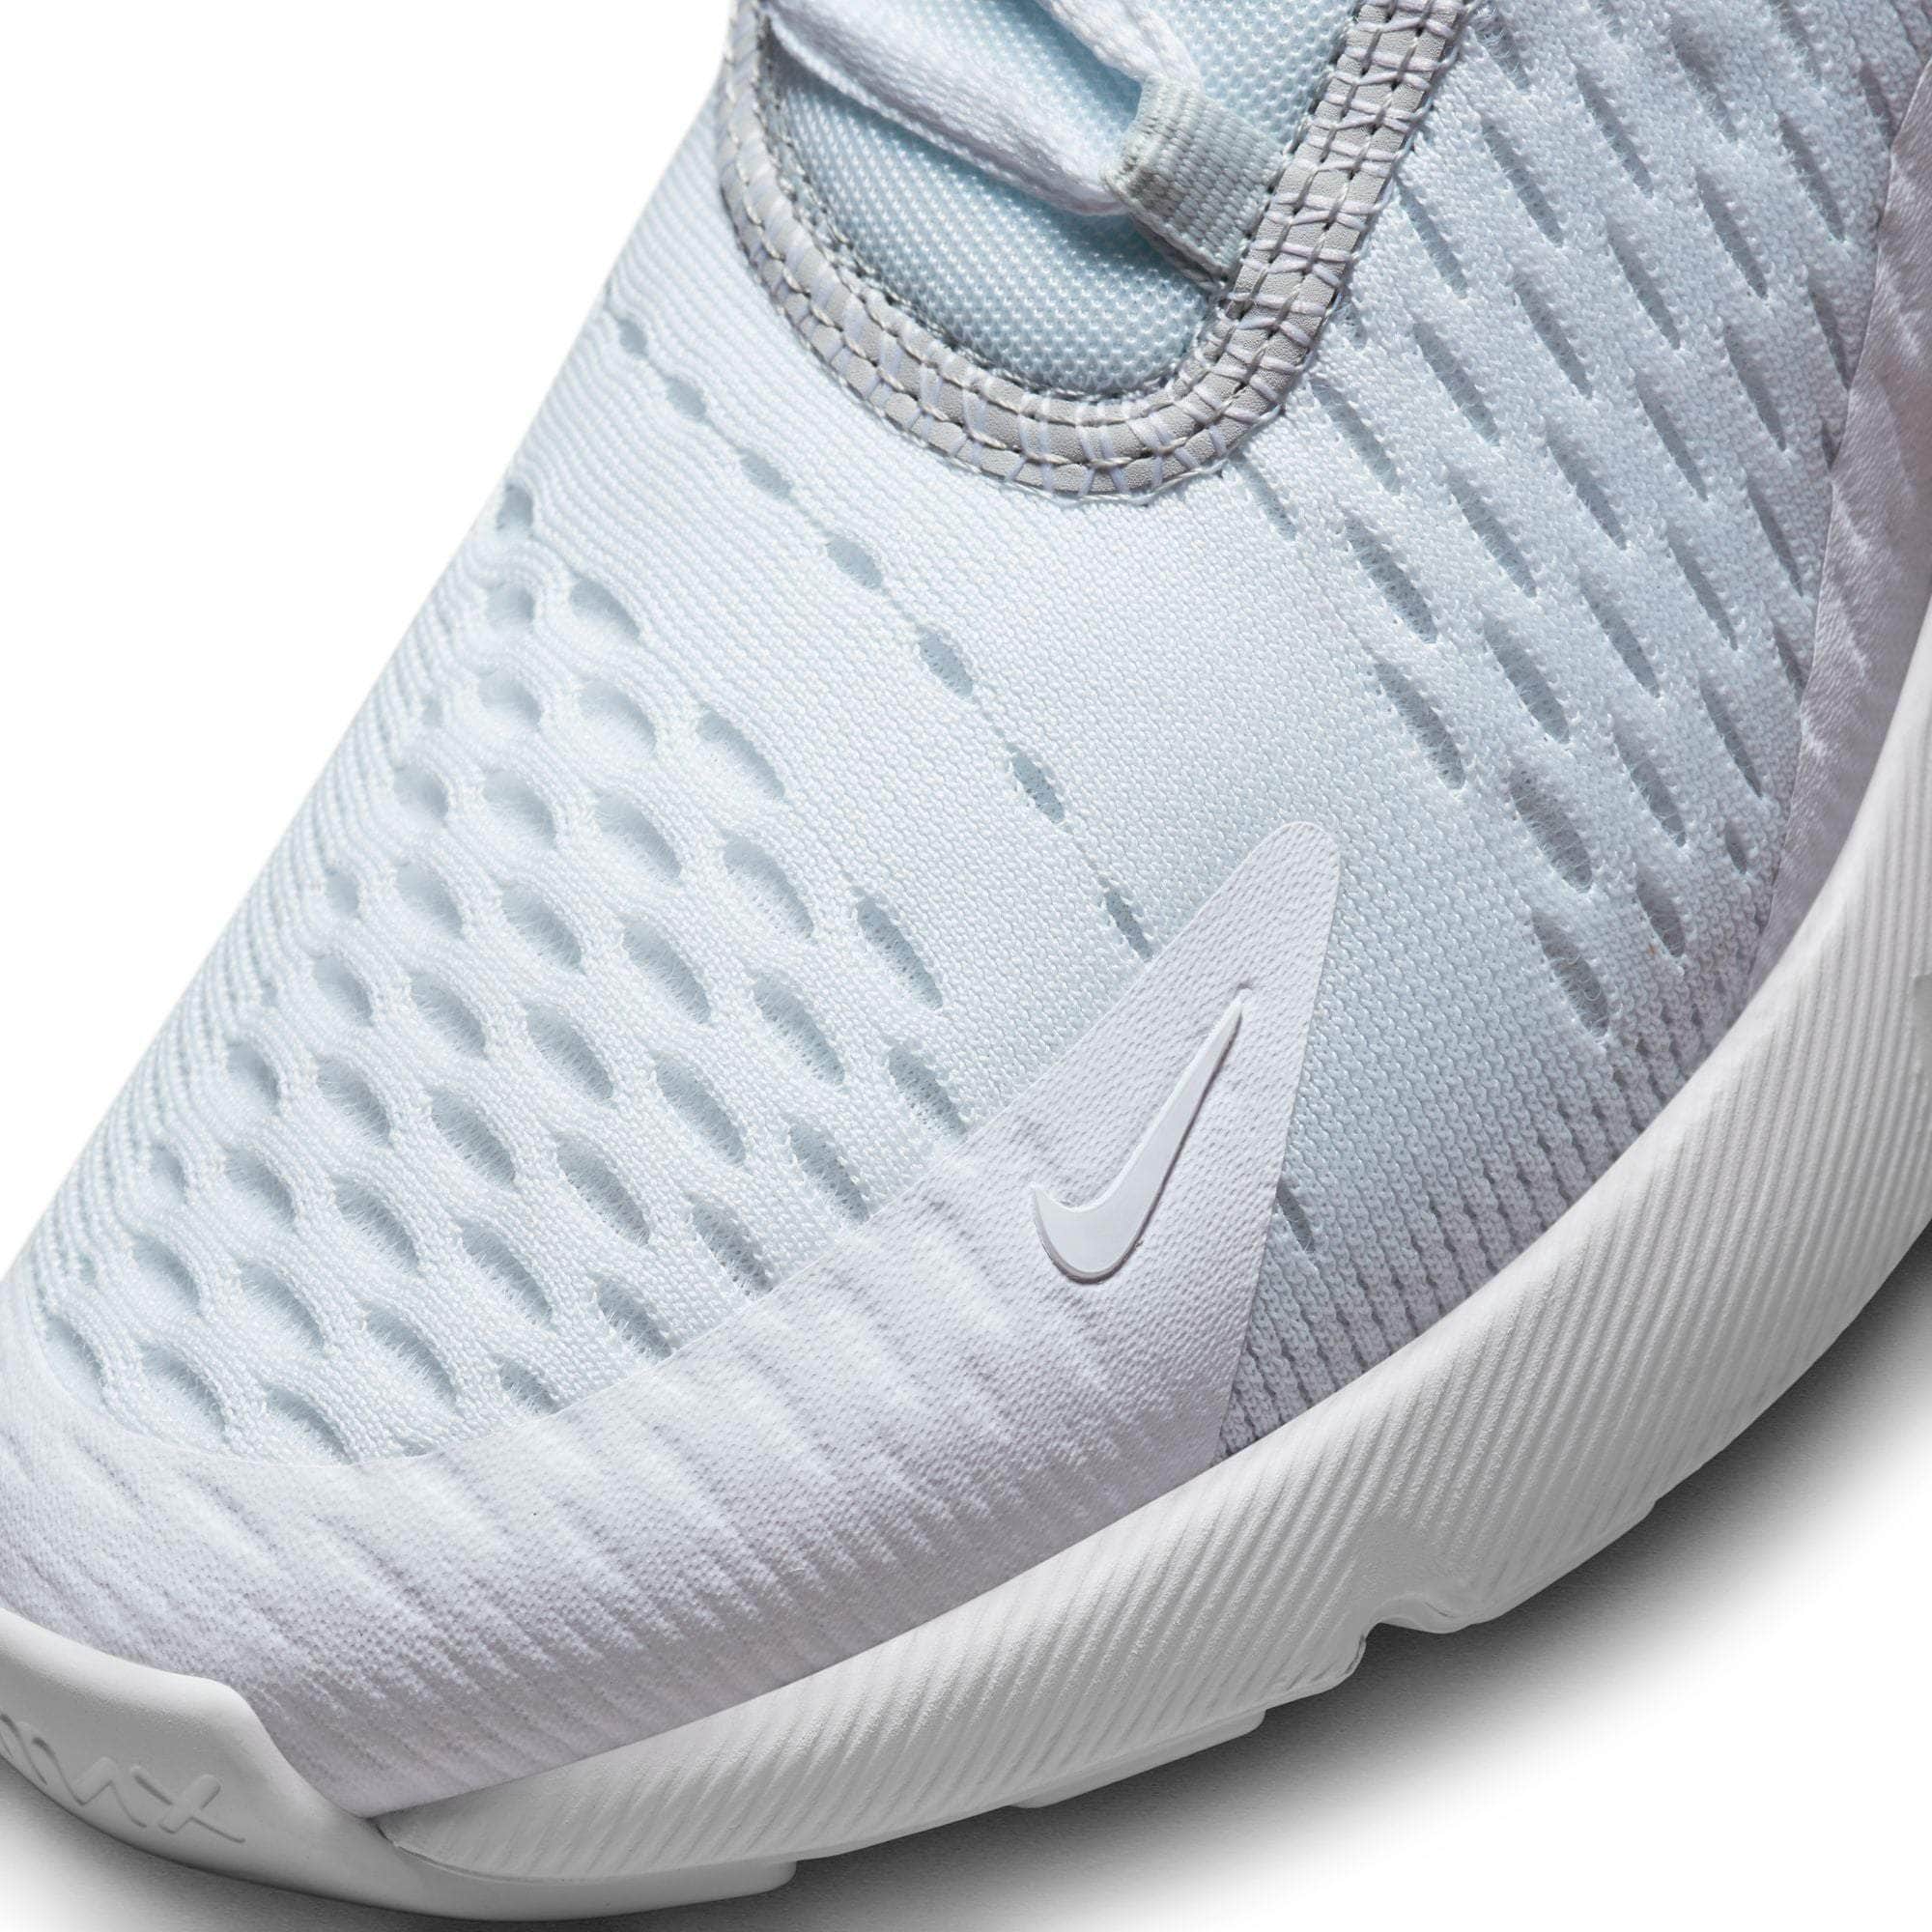 White Nike Shoes Air Max 270 Silver / 5.5